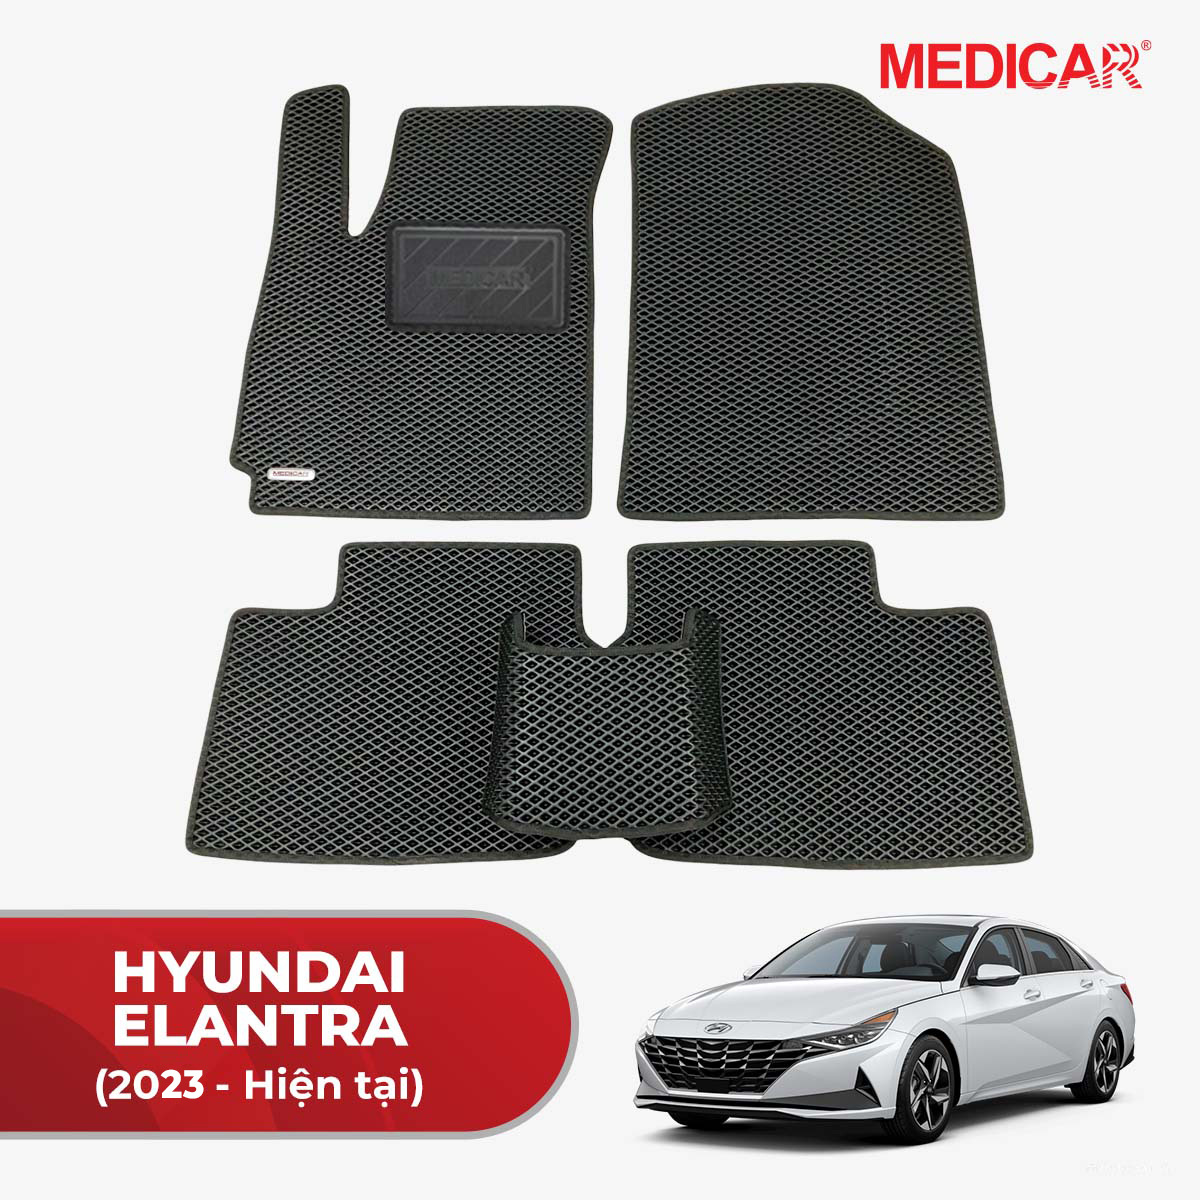 Thảm lót sàn ô tô Medicar xe Hyundai Elantra (2023 -> Hiện tại) - chống nước, không mùi, ngăn bụi bẩn